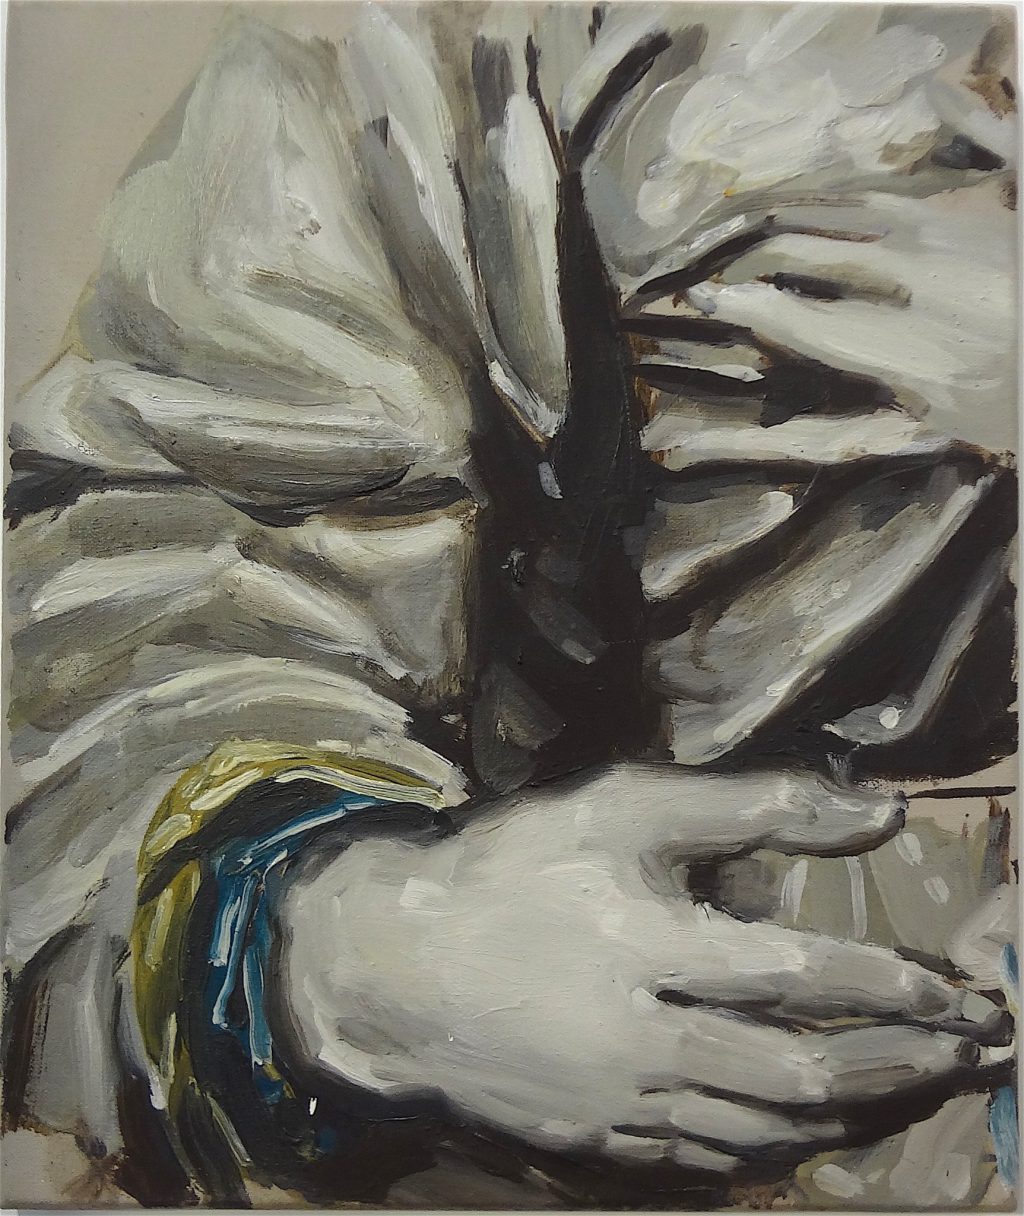 ミヒャエル・ボレマンス Michaël Borremans “The Prophecy” 1999, 50 x 42 cm, oil on canvas